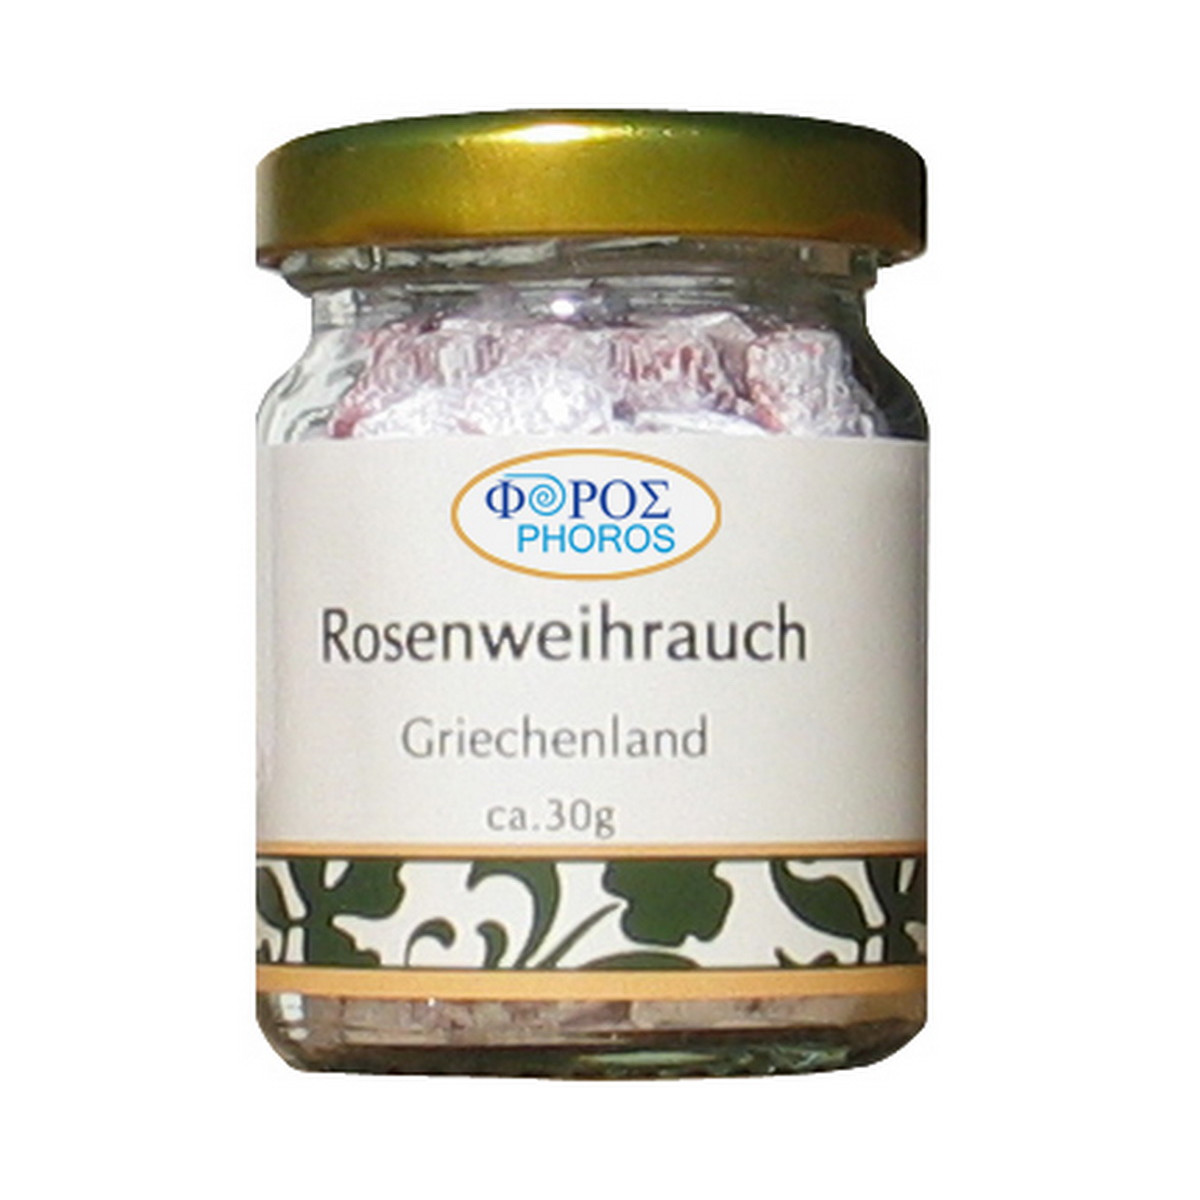 Rosenweihrauch - Phoros Räucherharz